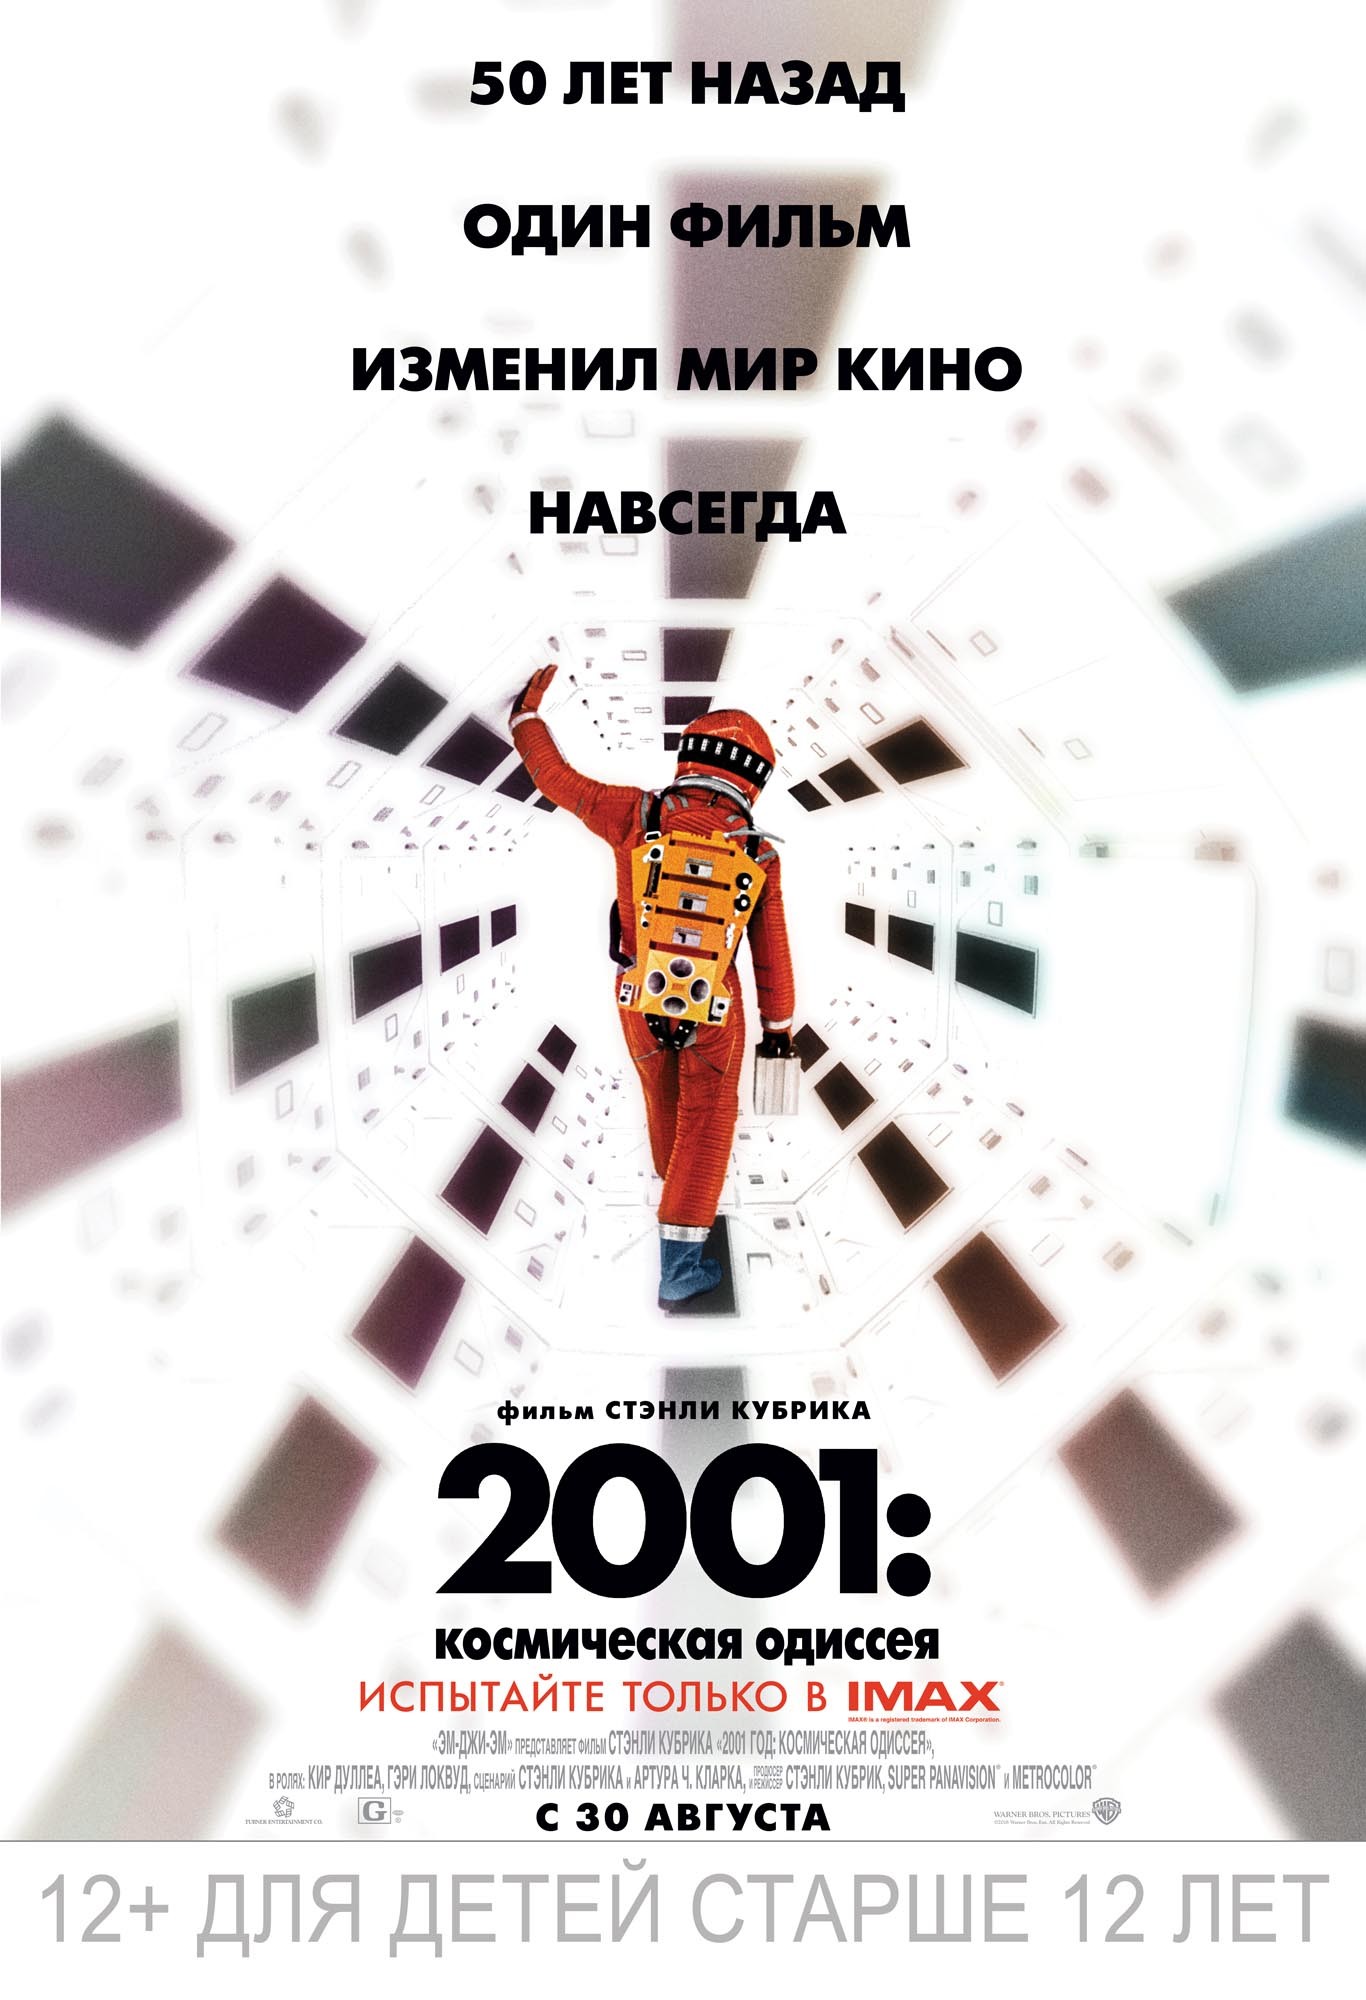 2001 год: Космическая одиссея: постер N147820